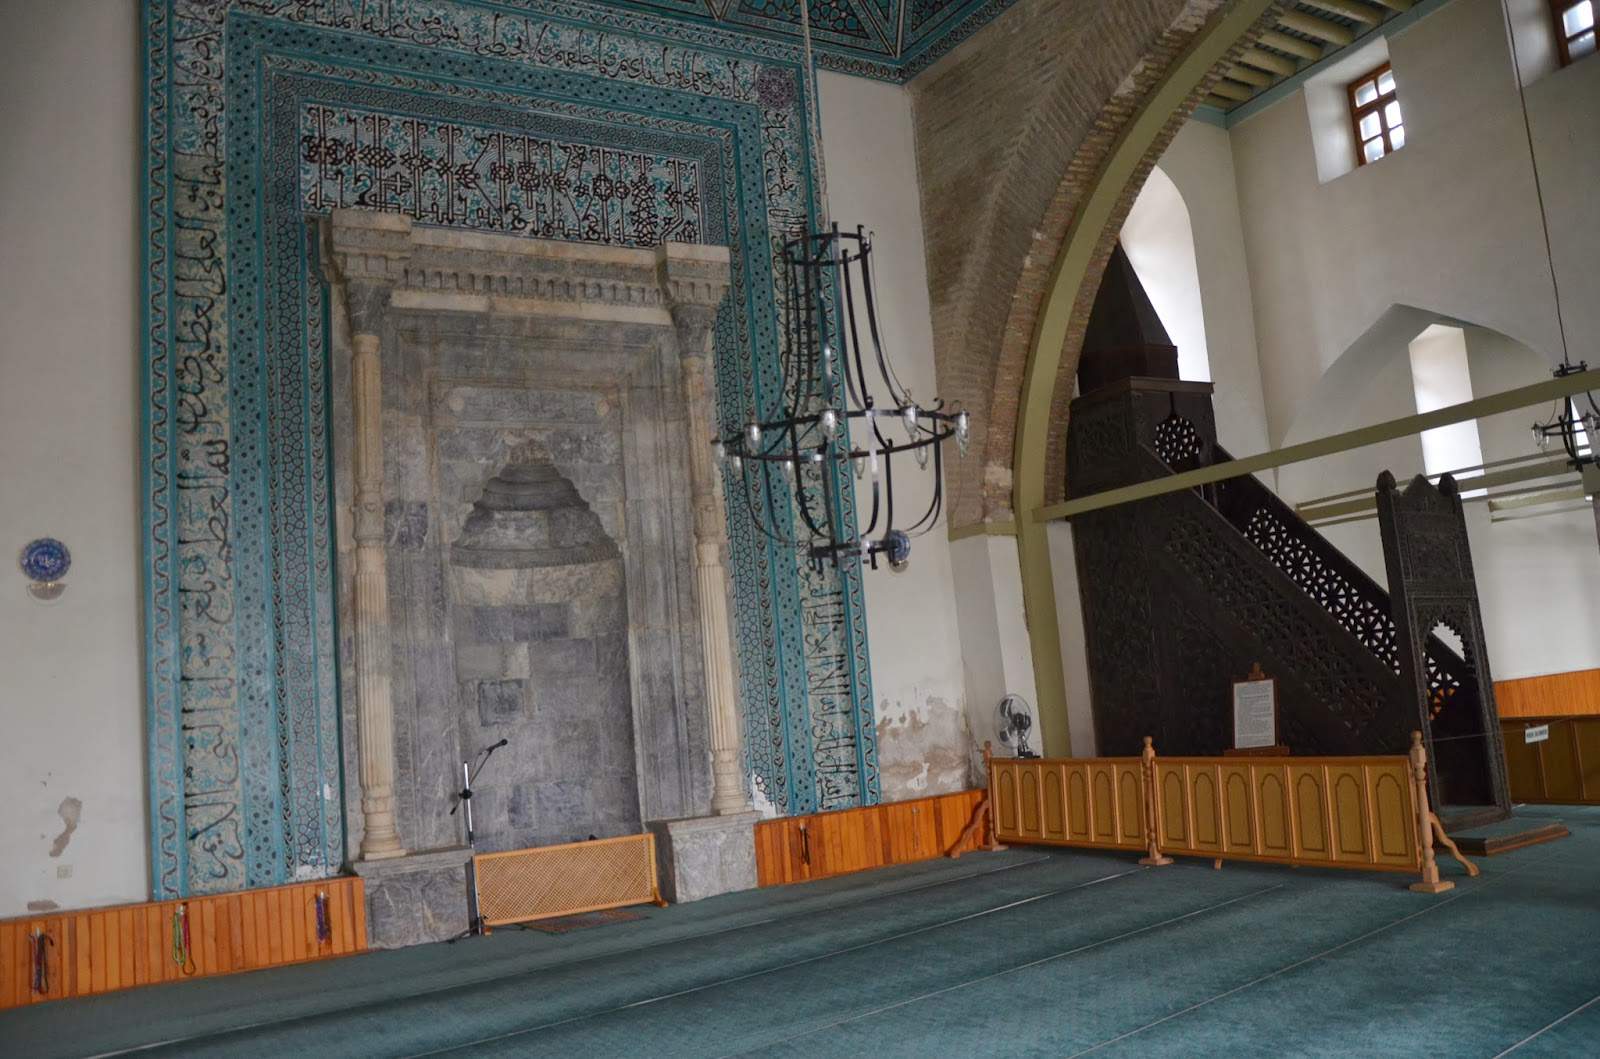 Alâeddin Camii in Konya, Turkey